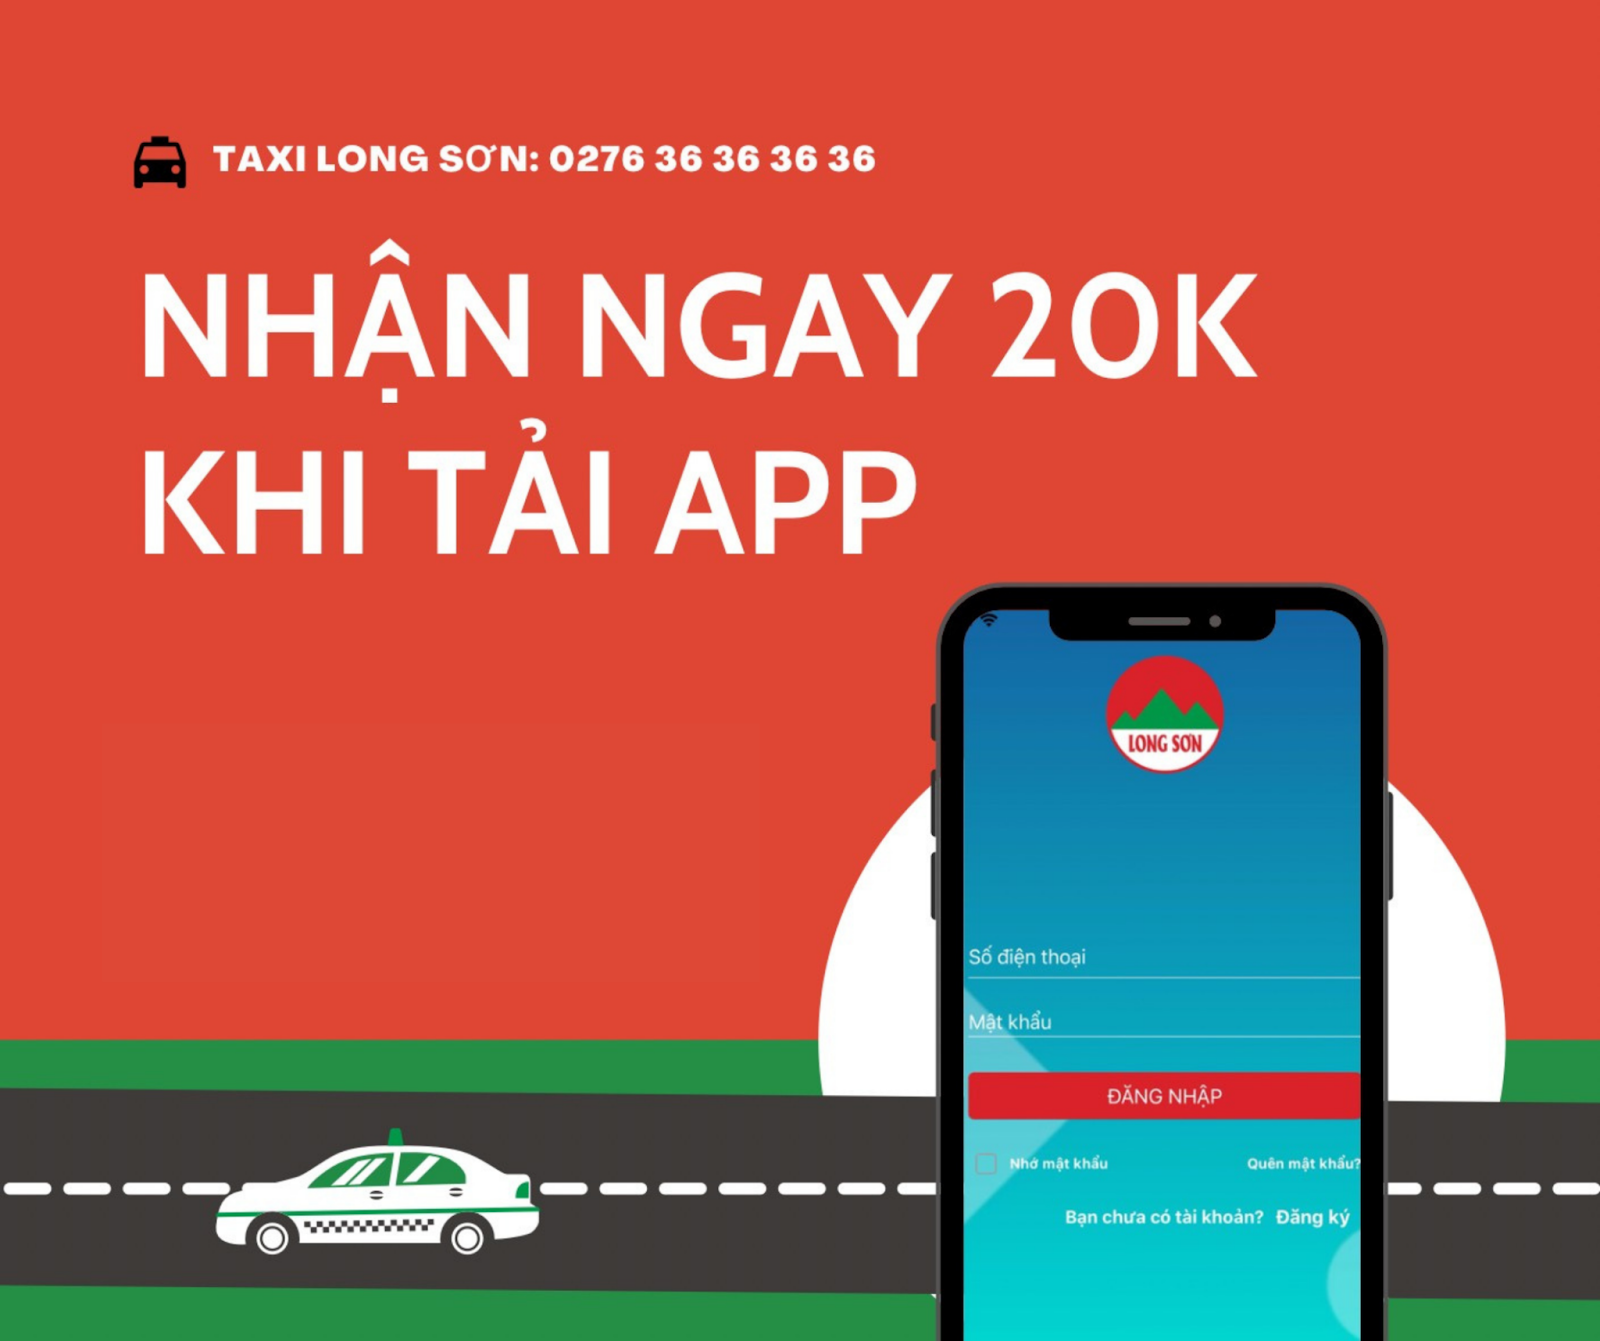 Taxi Long Sơn